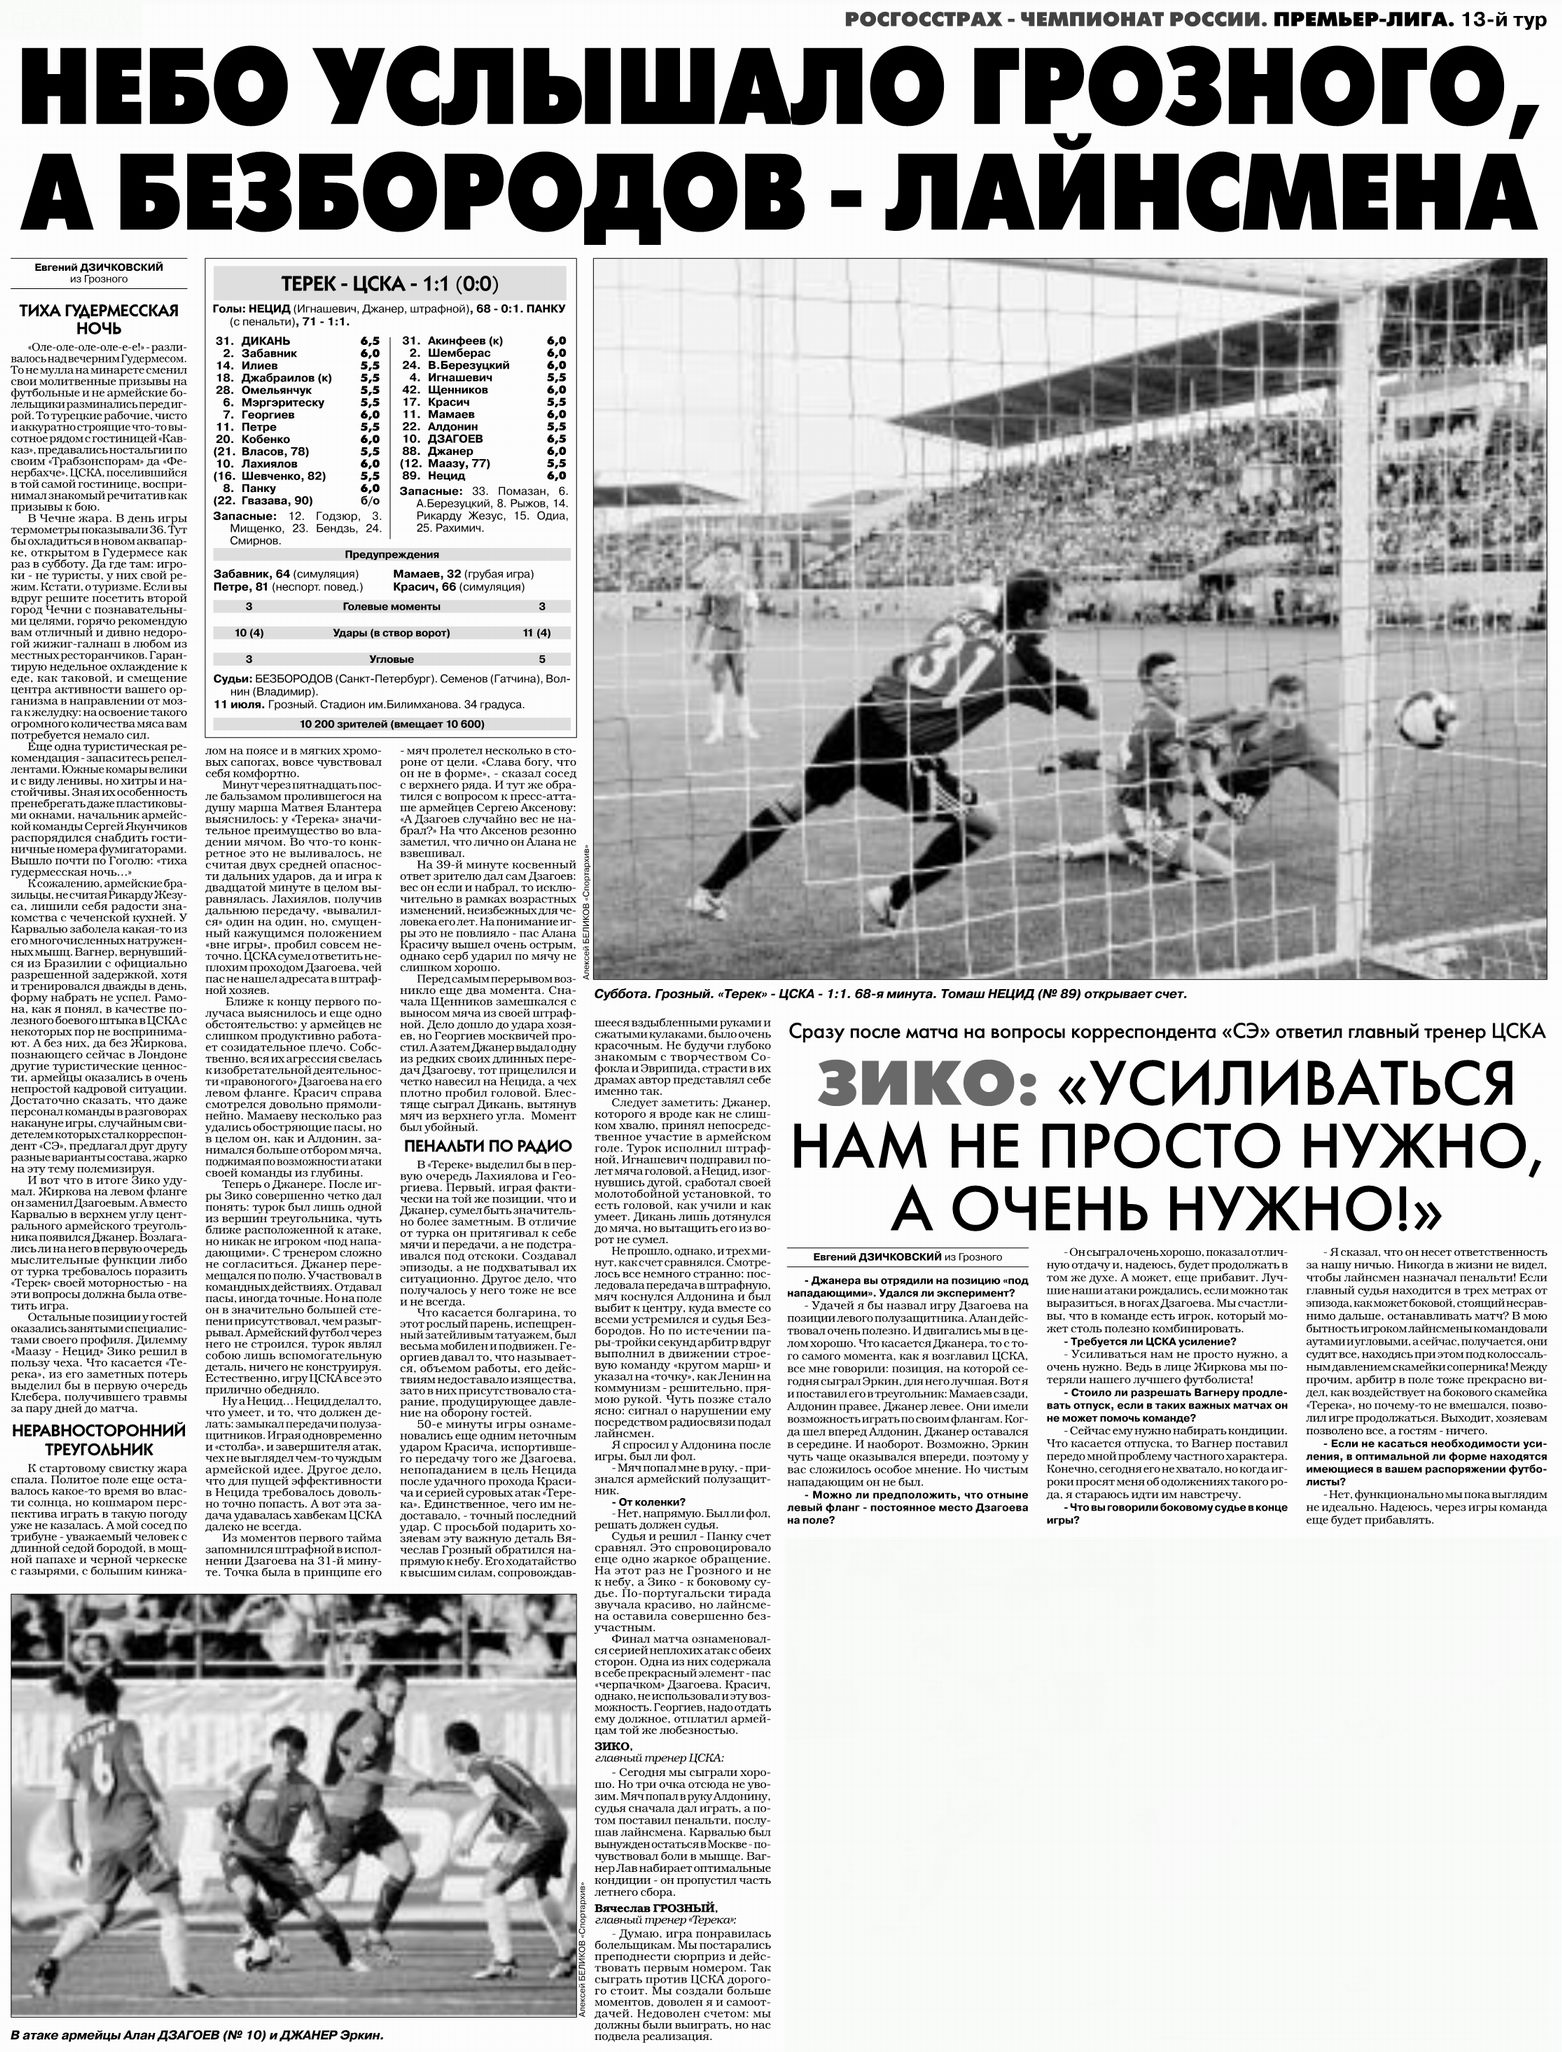 2009-07-11.Terek-CSKA